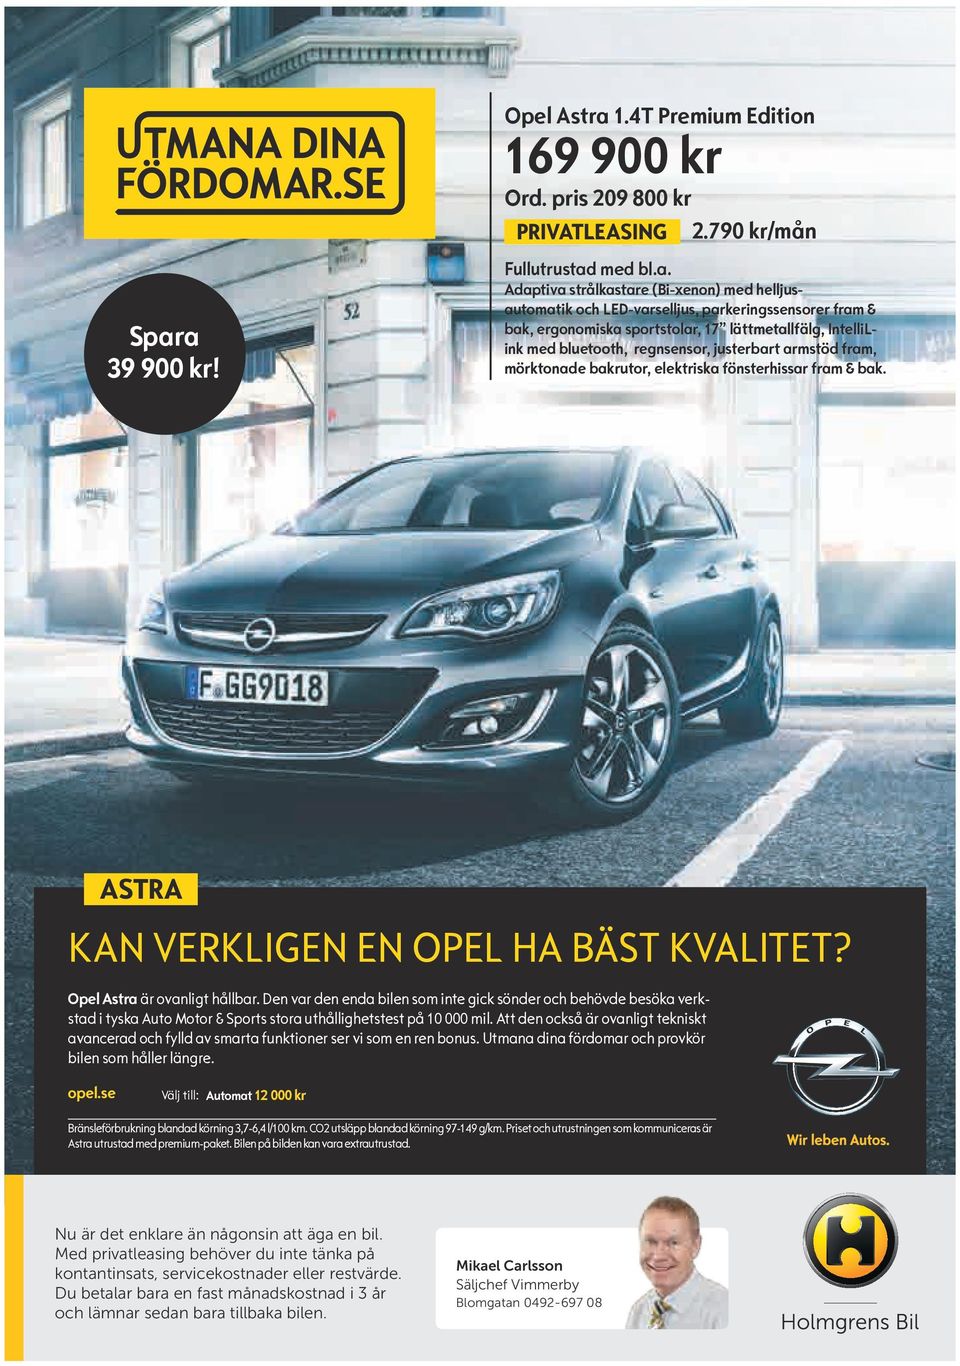 fönsterhissar fram & bak. ASTRA KAN VERKLIGEN EN OPEL HA BÄST KVALITET? Opel Astra är ovanligt hållbar.